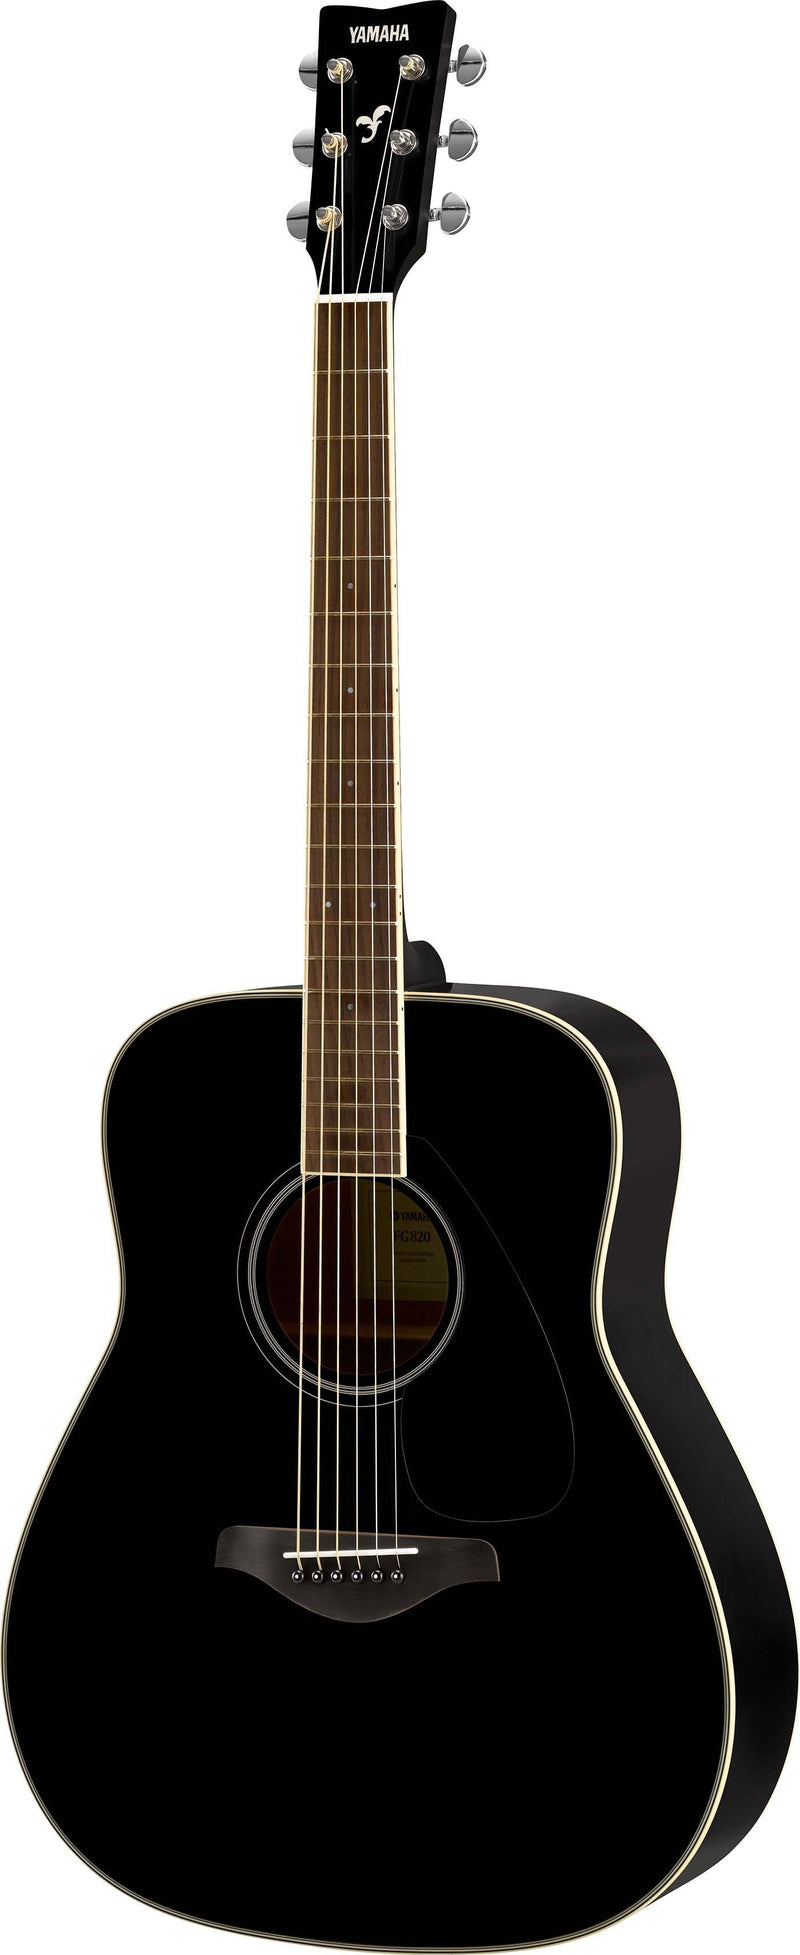 Yamaha FG820 Folk Guitar w/Solid Spruce Top